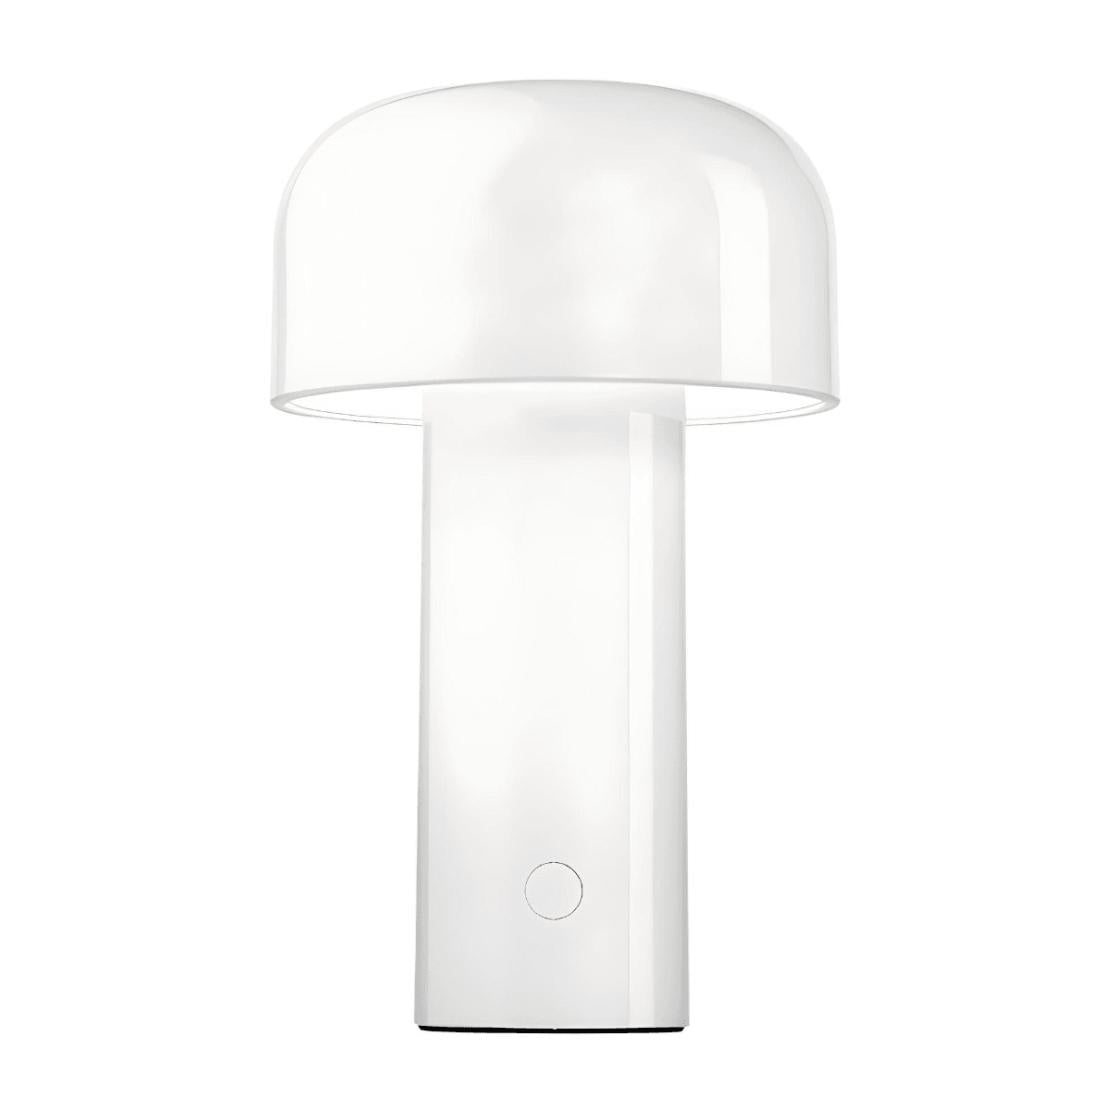 White LED portable USB metal table lamp